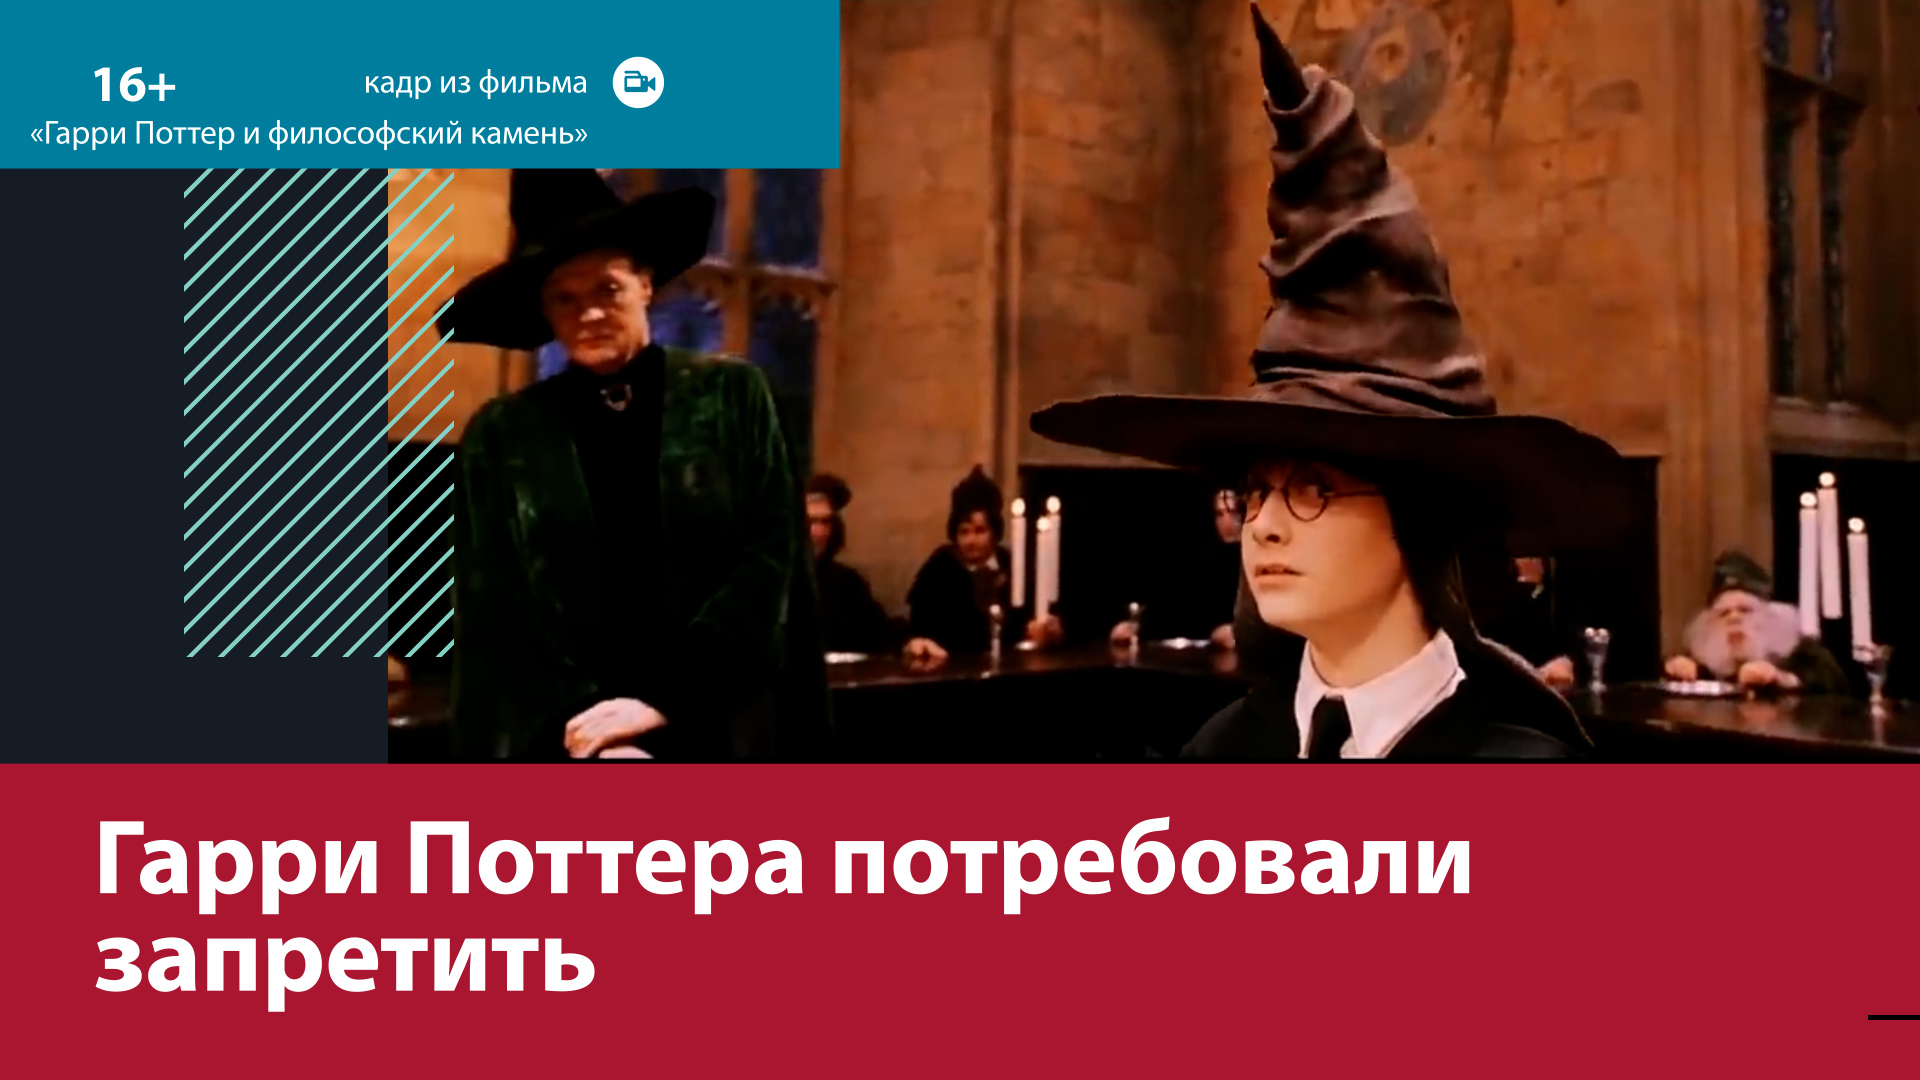 Могут ли в России запретить фильмы о "Гарри Поттере"? – Москва FM